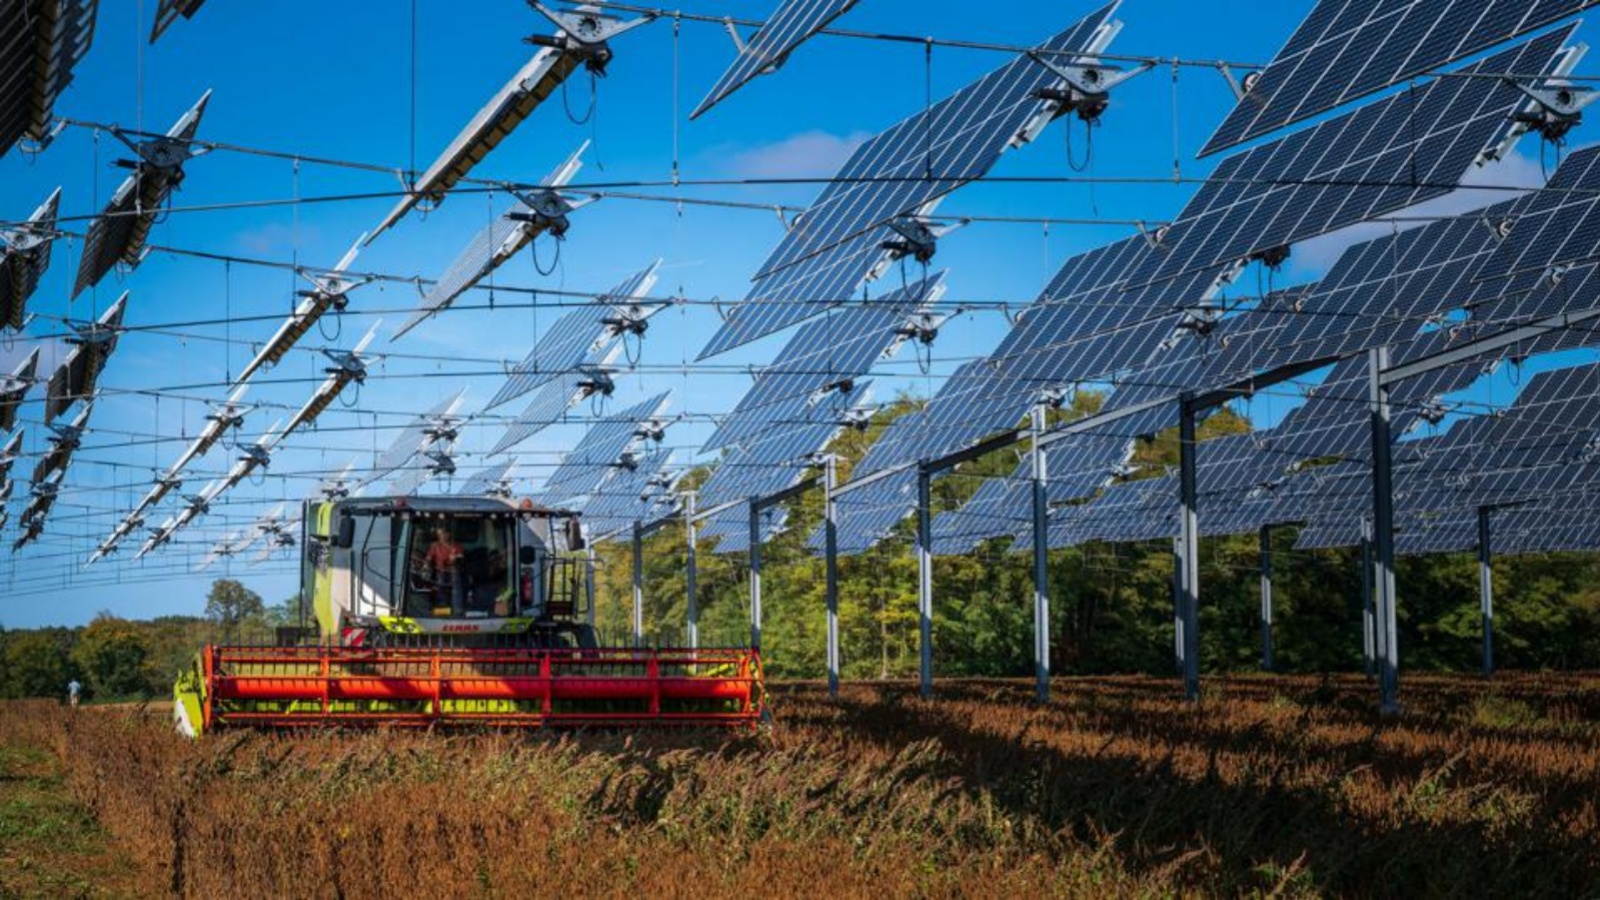 حصاد فول الصويا تحت الألواح الشمسية المعلقة في امانس بشرق فرنسا. أظهر تحليل جديد أن الطاقة الشمسية وطاقة الرياح تفوقت على توليد الكهرباء بالغاز الطبيعي لإنتاج أكثر من خمس كهرباء الاتحاد الأوروبي العام الماضي